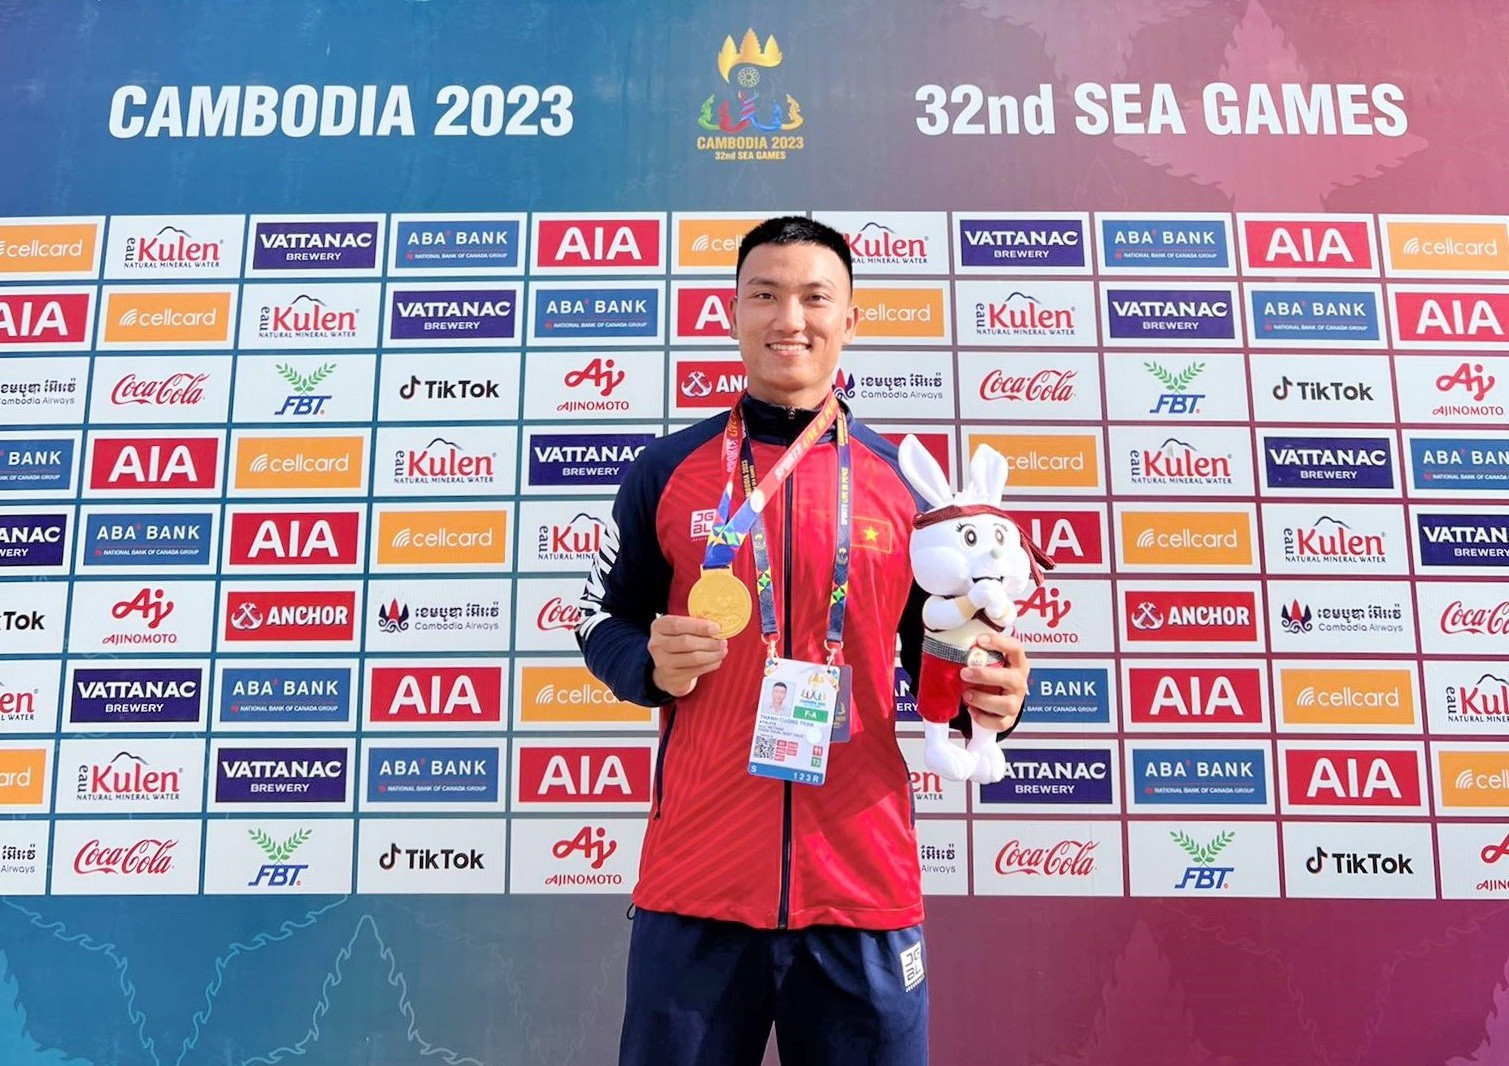 Vận động viên Trần Thanh Cường đã có thành tích xuất sắc tại Đại hội thể thao Đông Nam Á 2023- SEA Games 32.